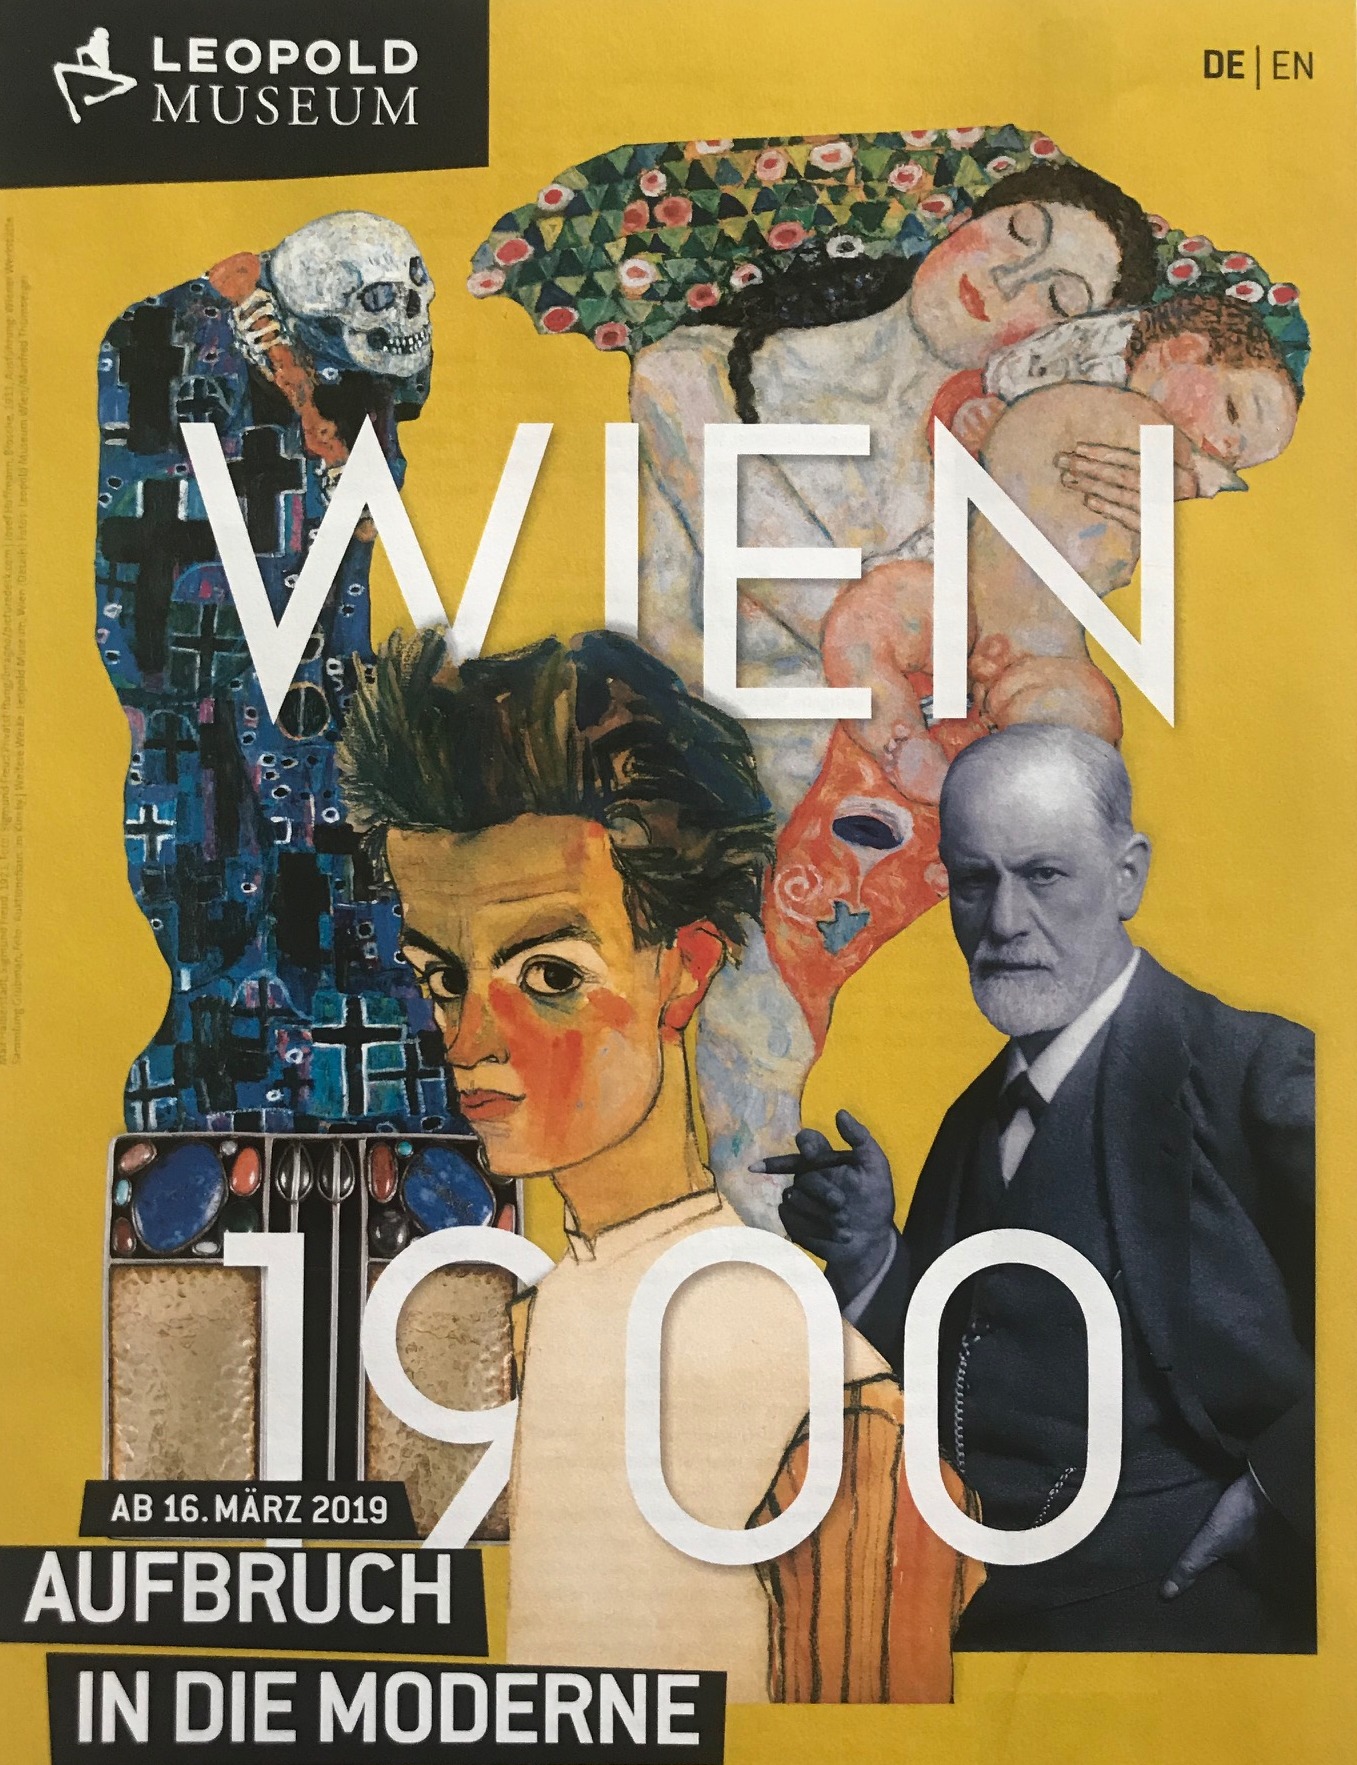 Wien 1900 im Leopold Museum